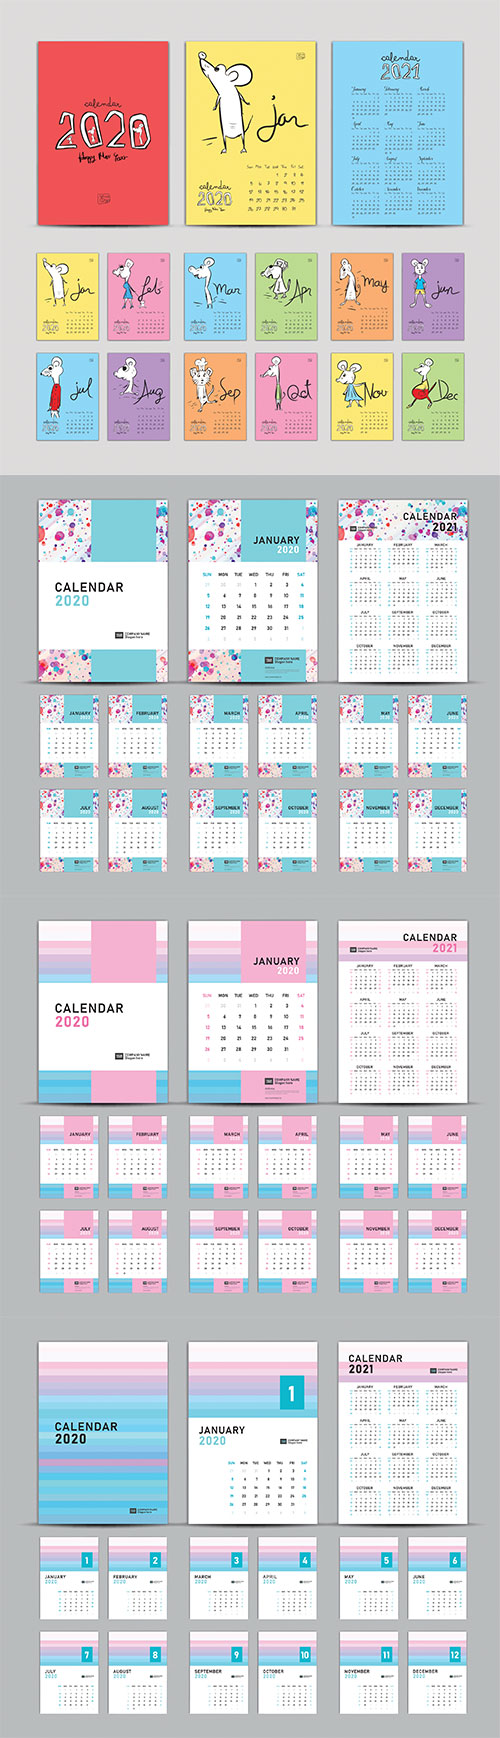 Calendar 2020-2021, Set Desk Calendar 2020 template vector, cover design, Set of 12 Months